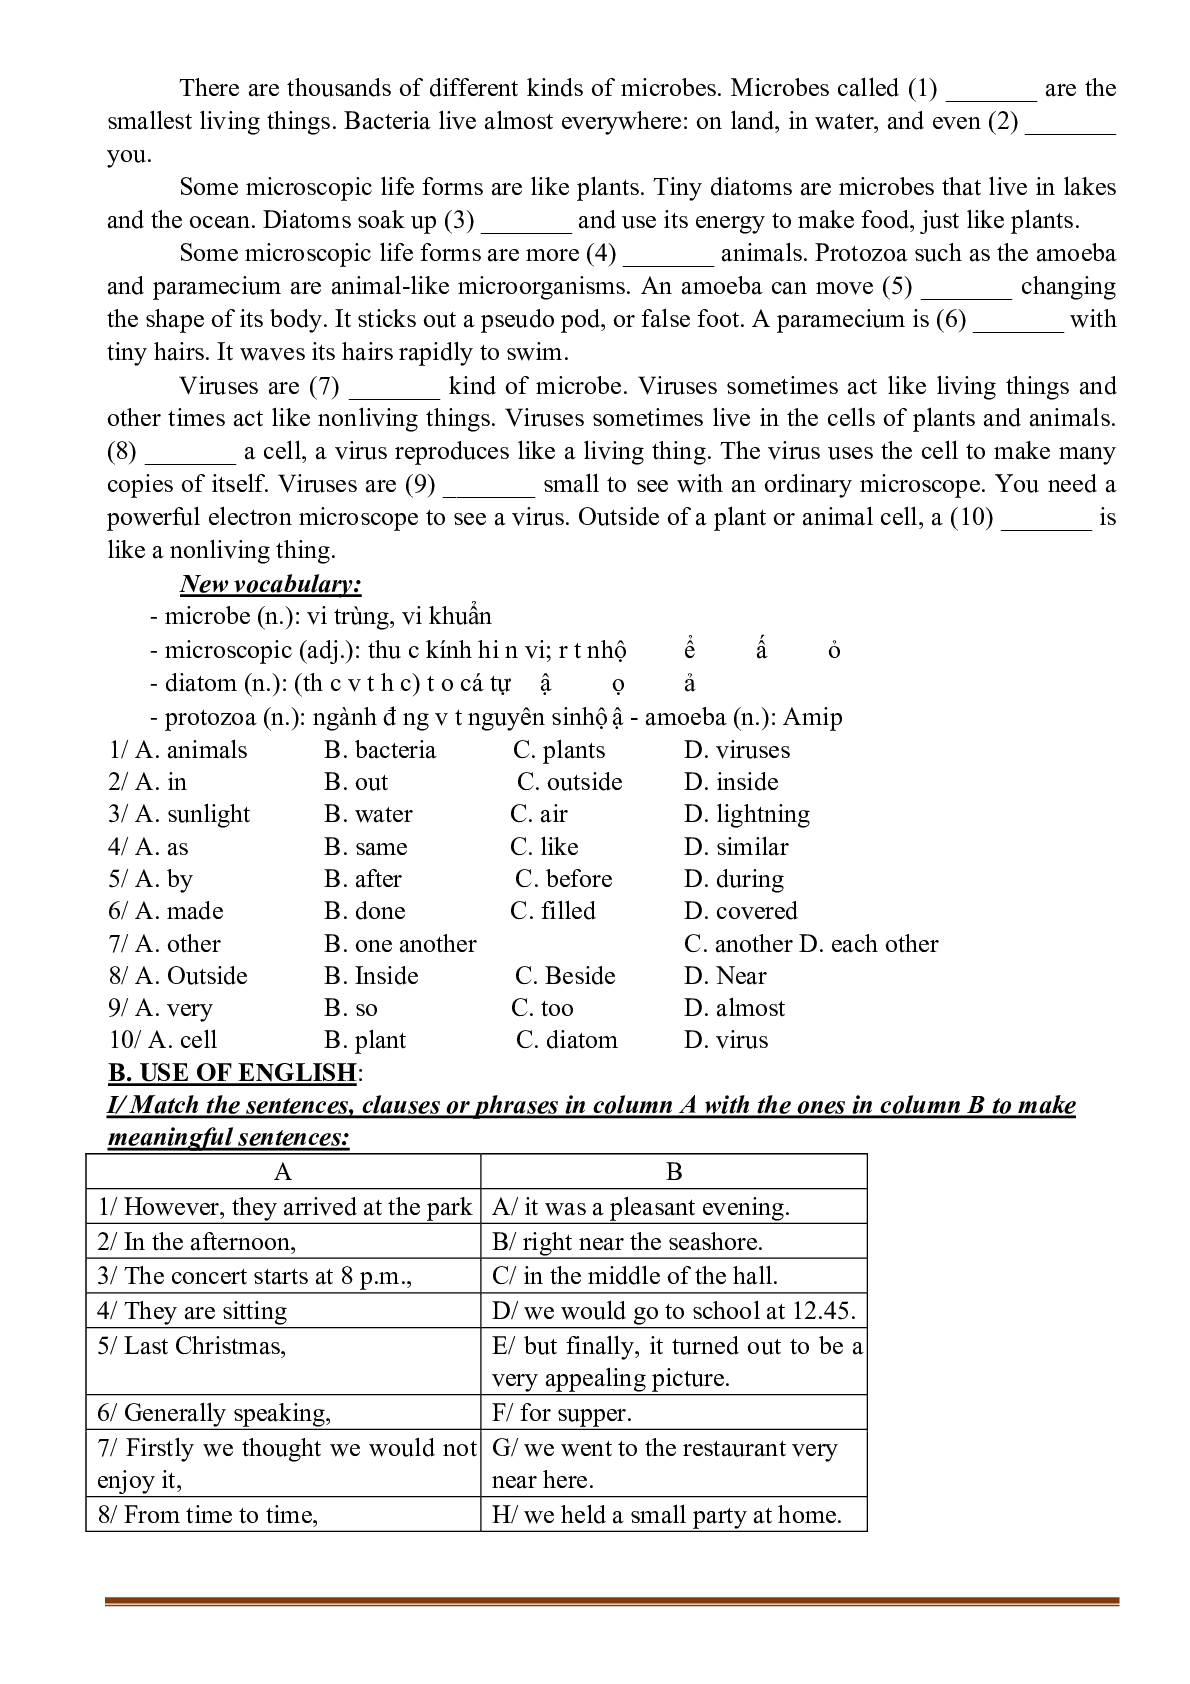 Bài tập tiếng anh lớp 10 cả năm theo từng unit (trang 4)